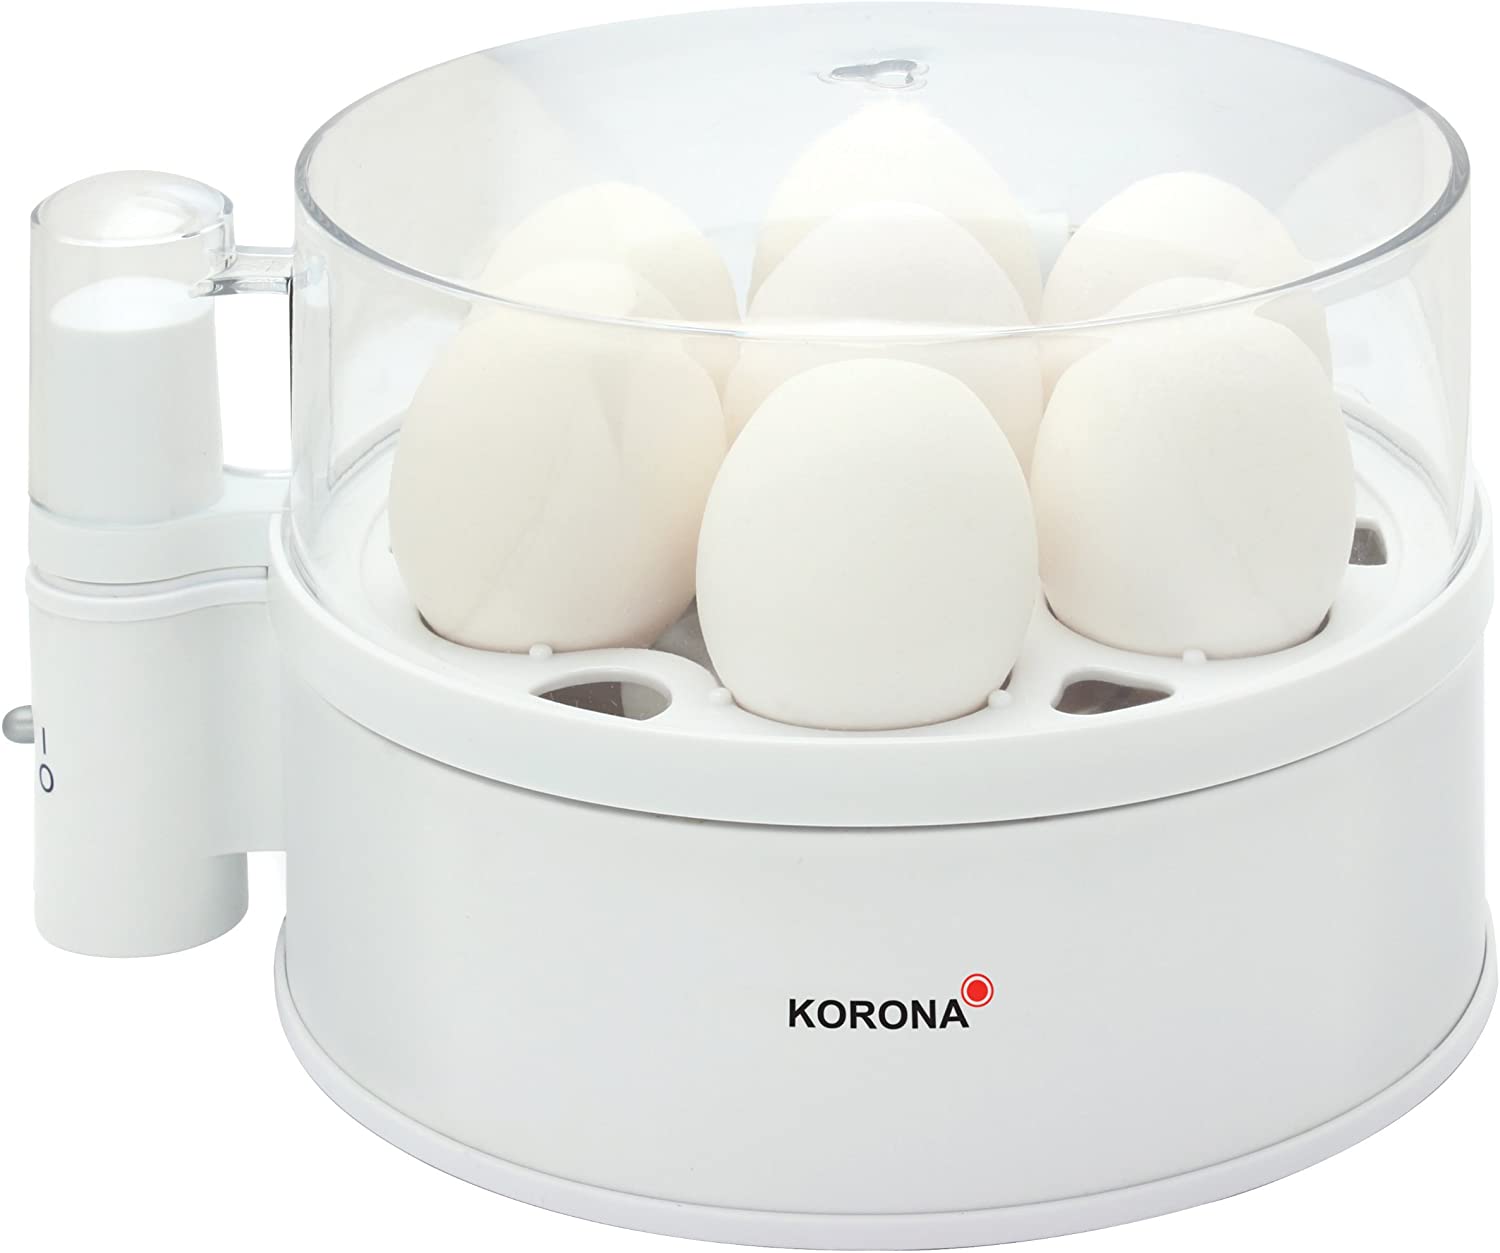 Korona 25301 Egg Cooker, White